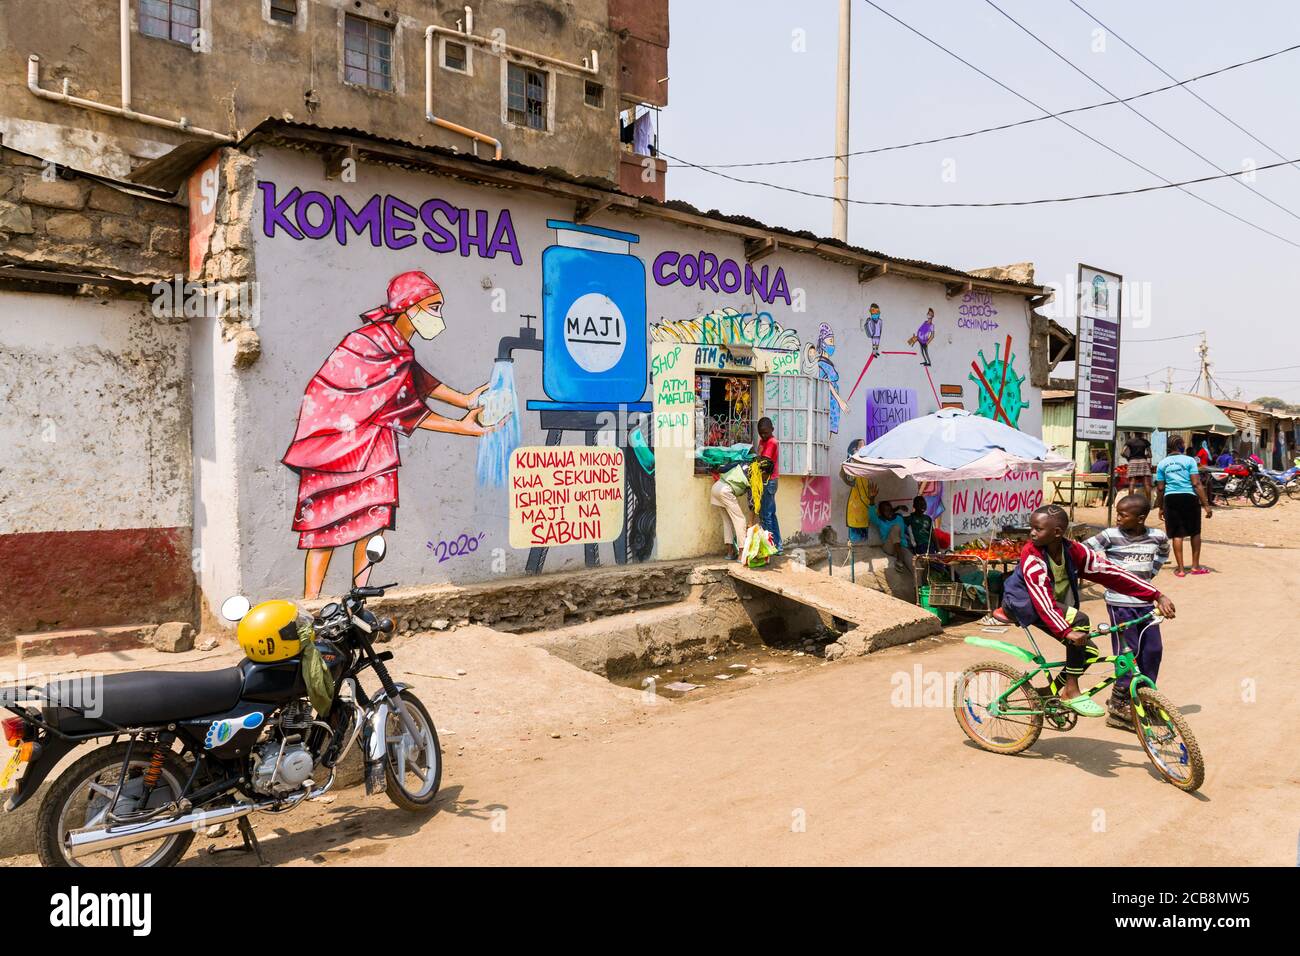 Ein Geschäft am Straßenrand mit einem großen Wandgemälde mit den Worten Komesha Corona oder Stop Corona und einem Bild einer Frau, die sich die Hände wäscht, Nairobi, Kenia Stockfoto